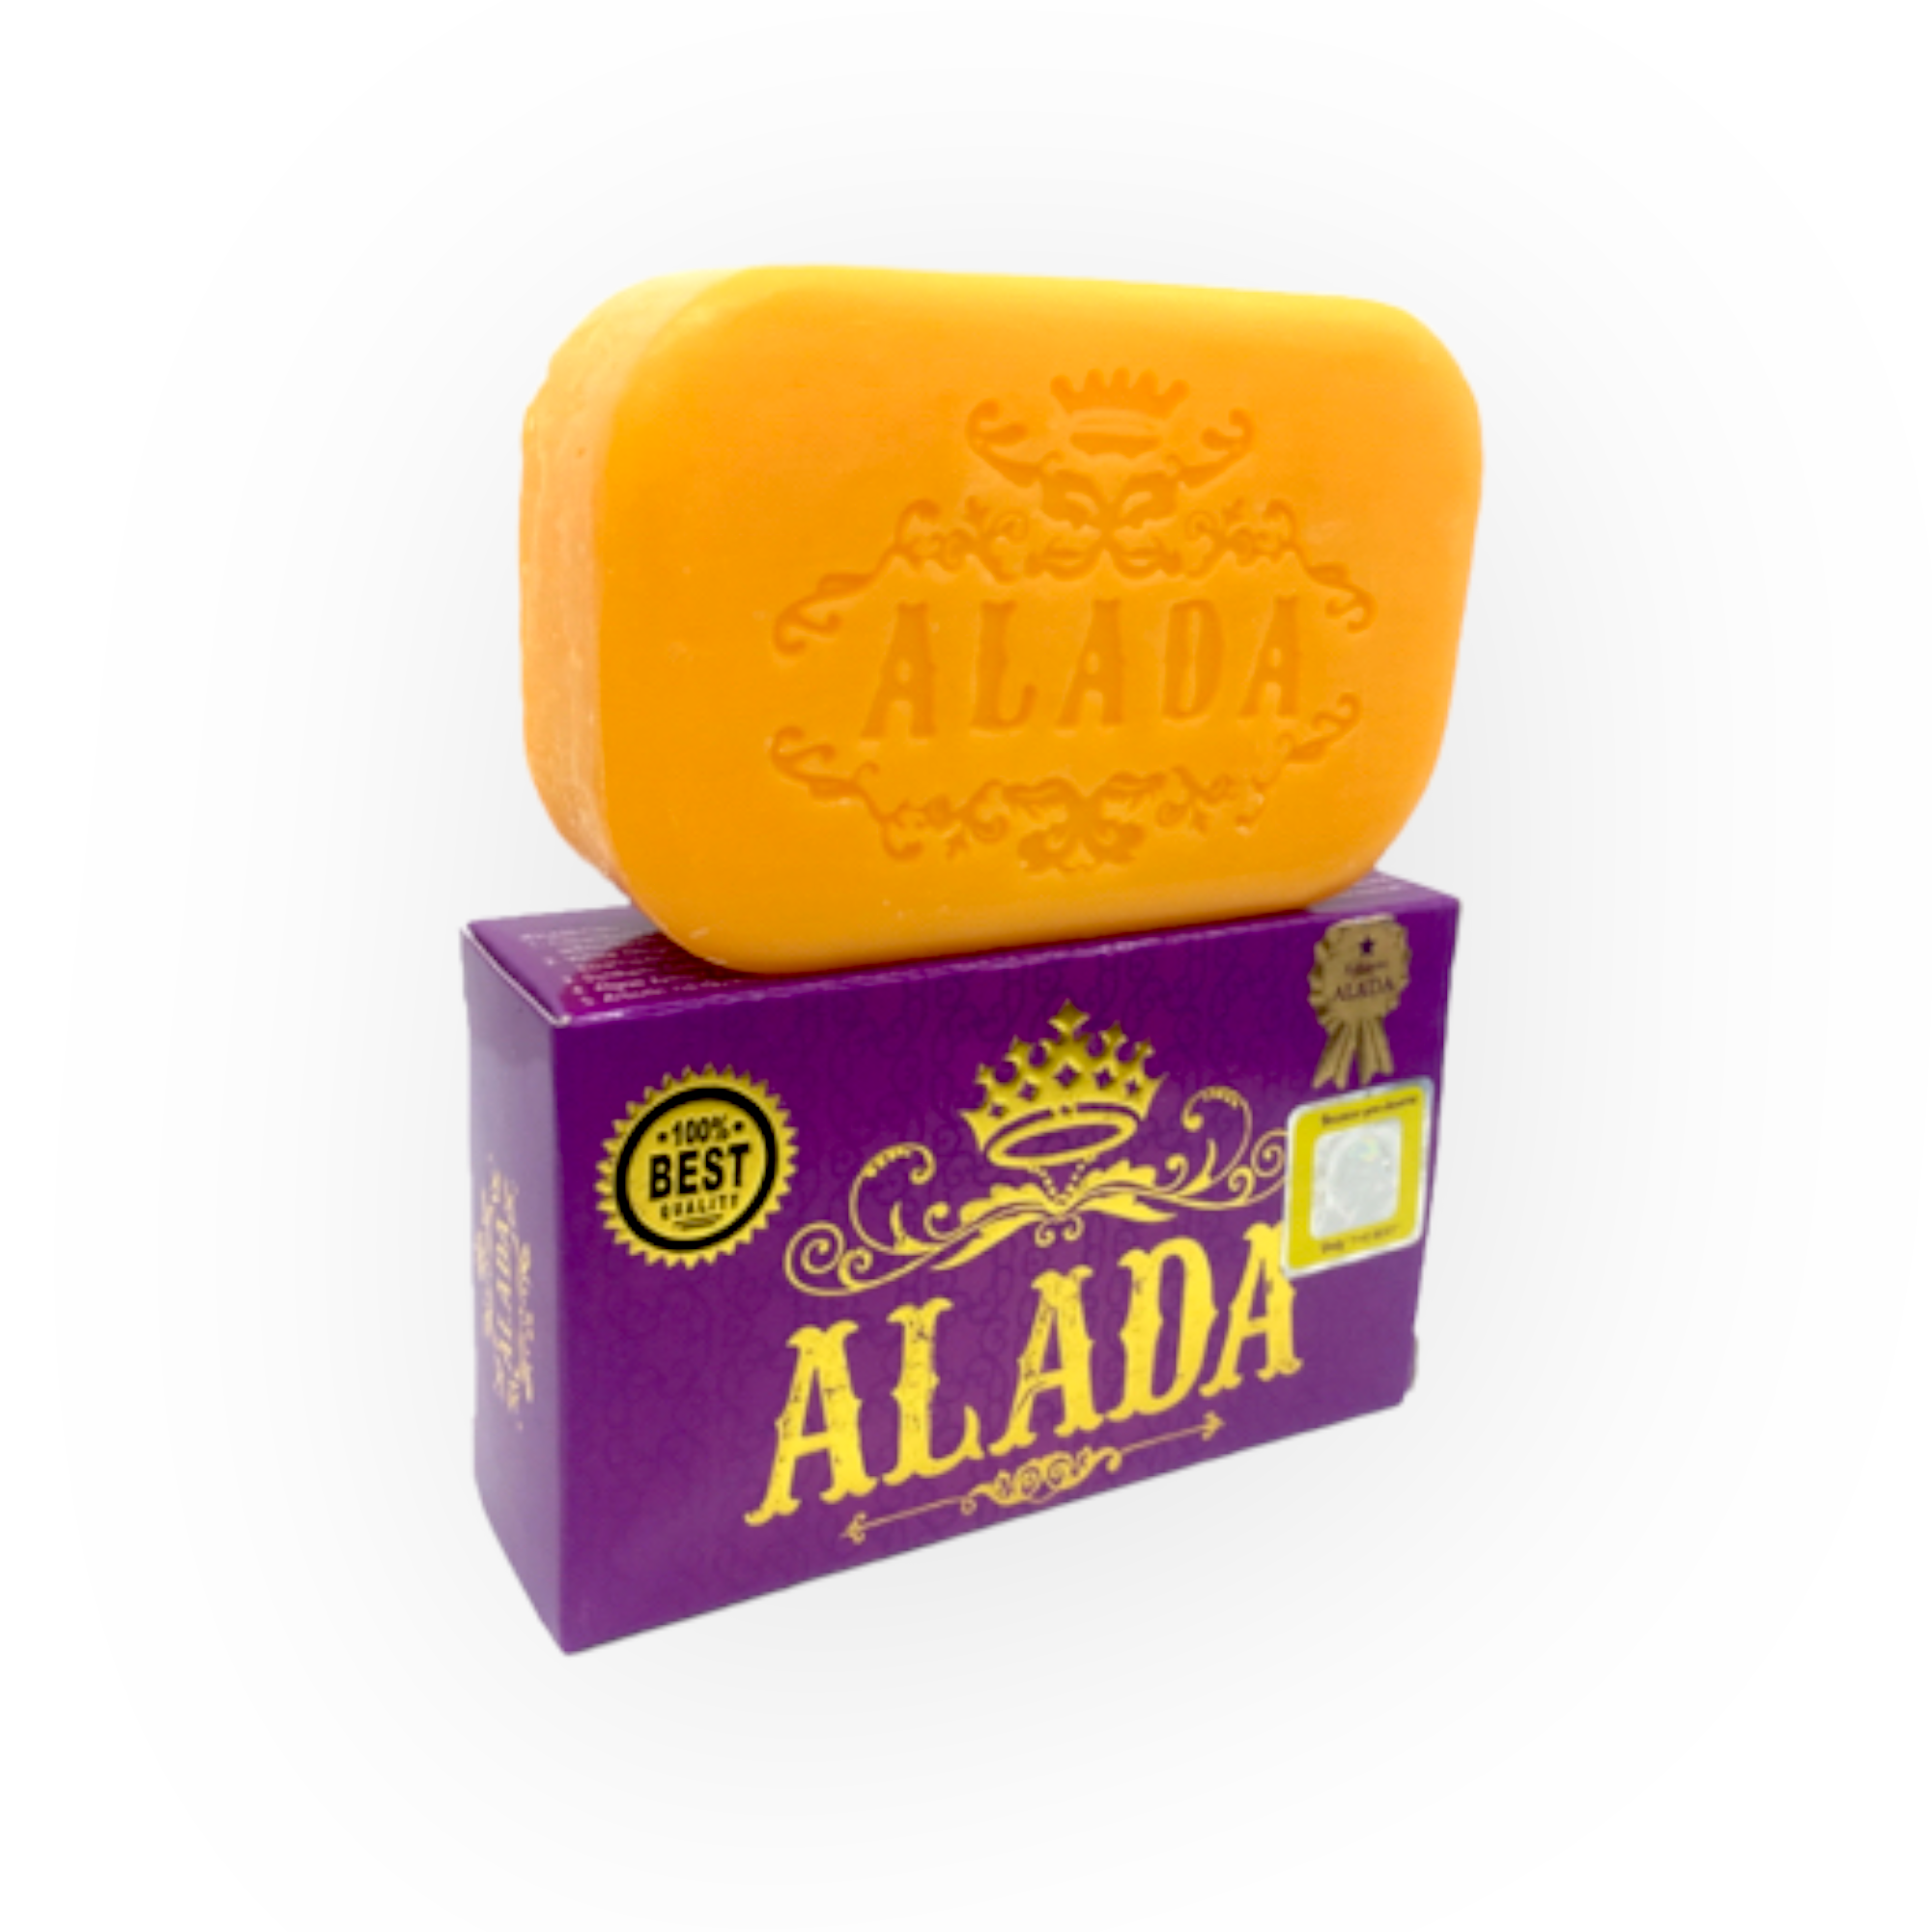 ALADA Whitening Soap 150g